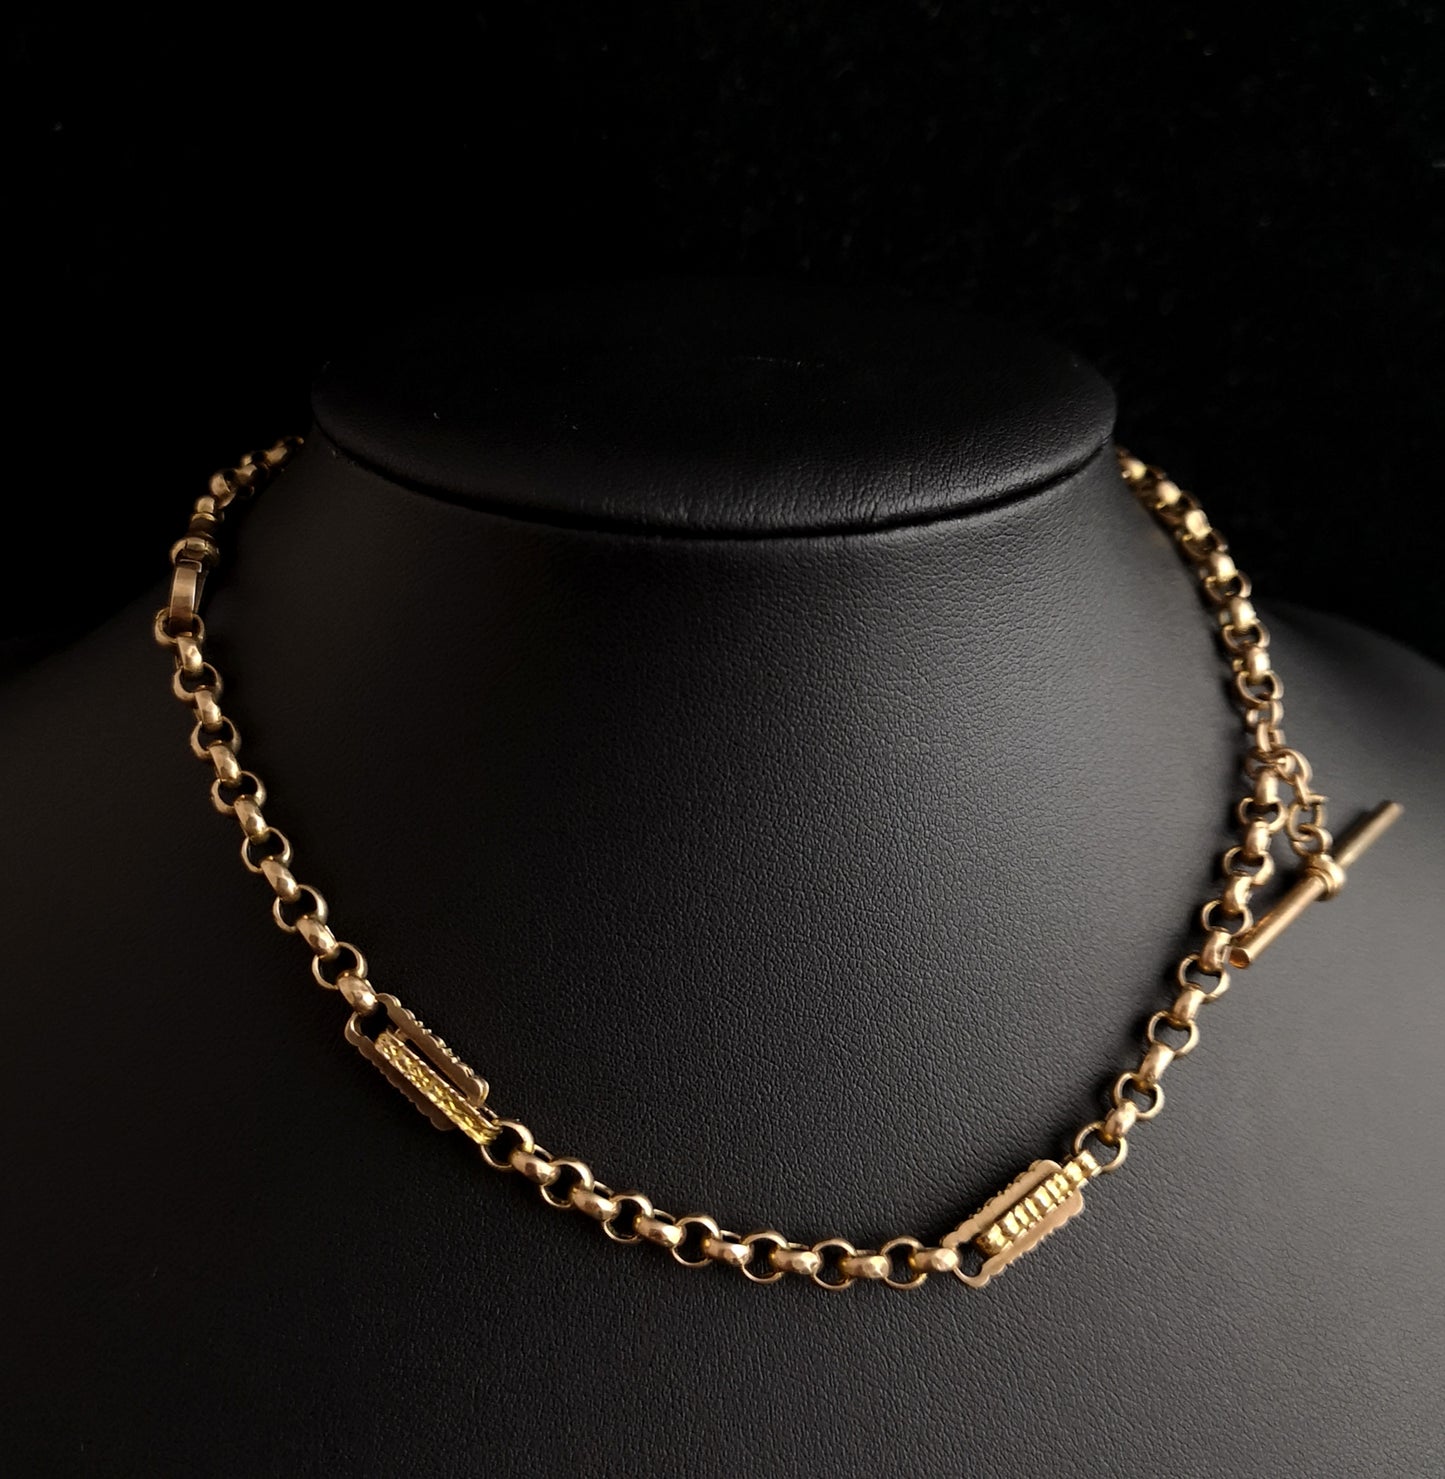 Antique Victorian 9ct gold Albert chain, watch chain